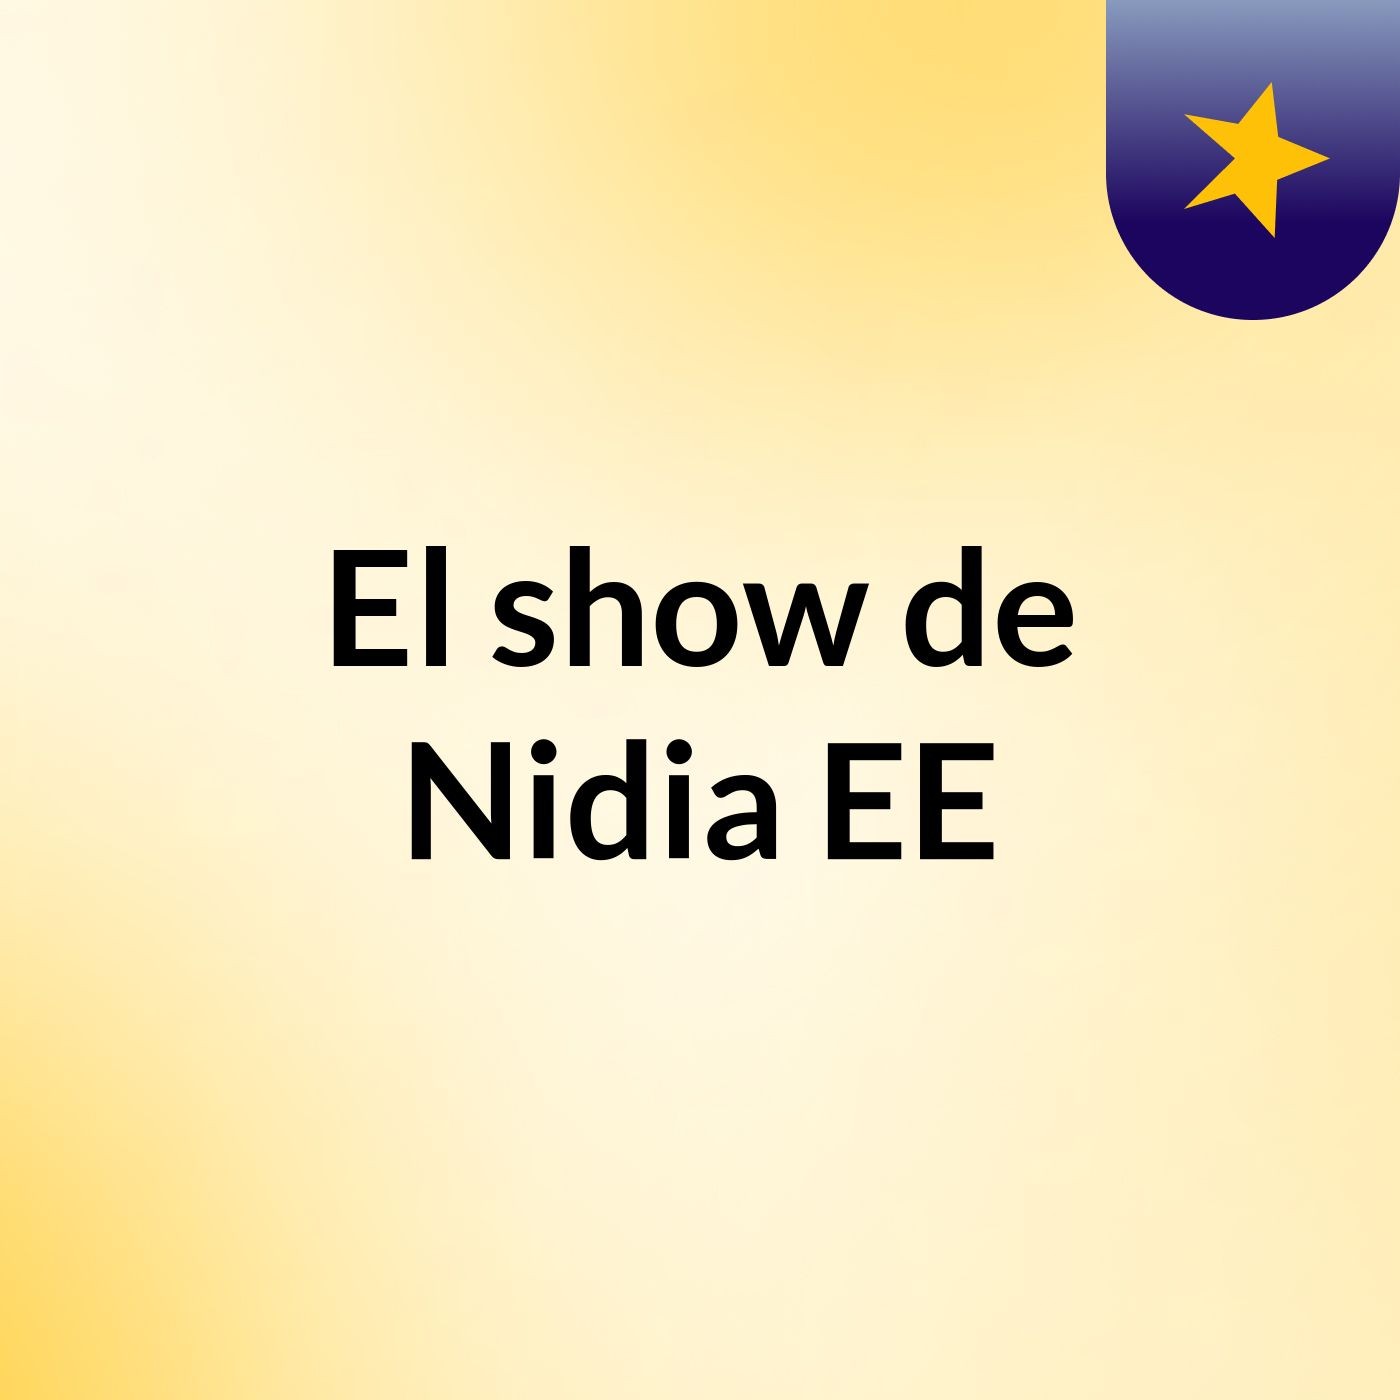 Episodio 16 - El show de Nidia EE